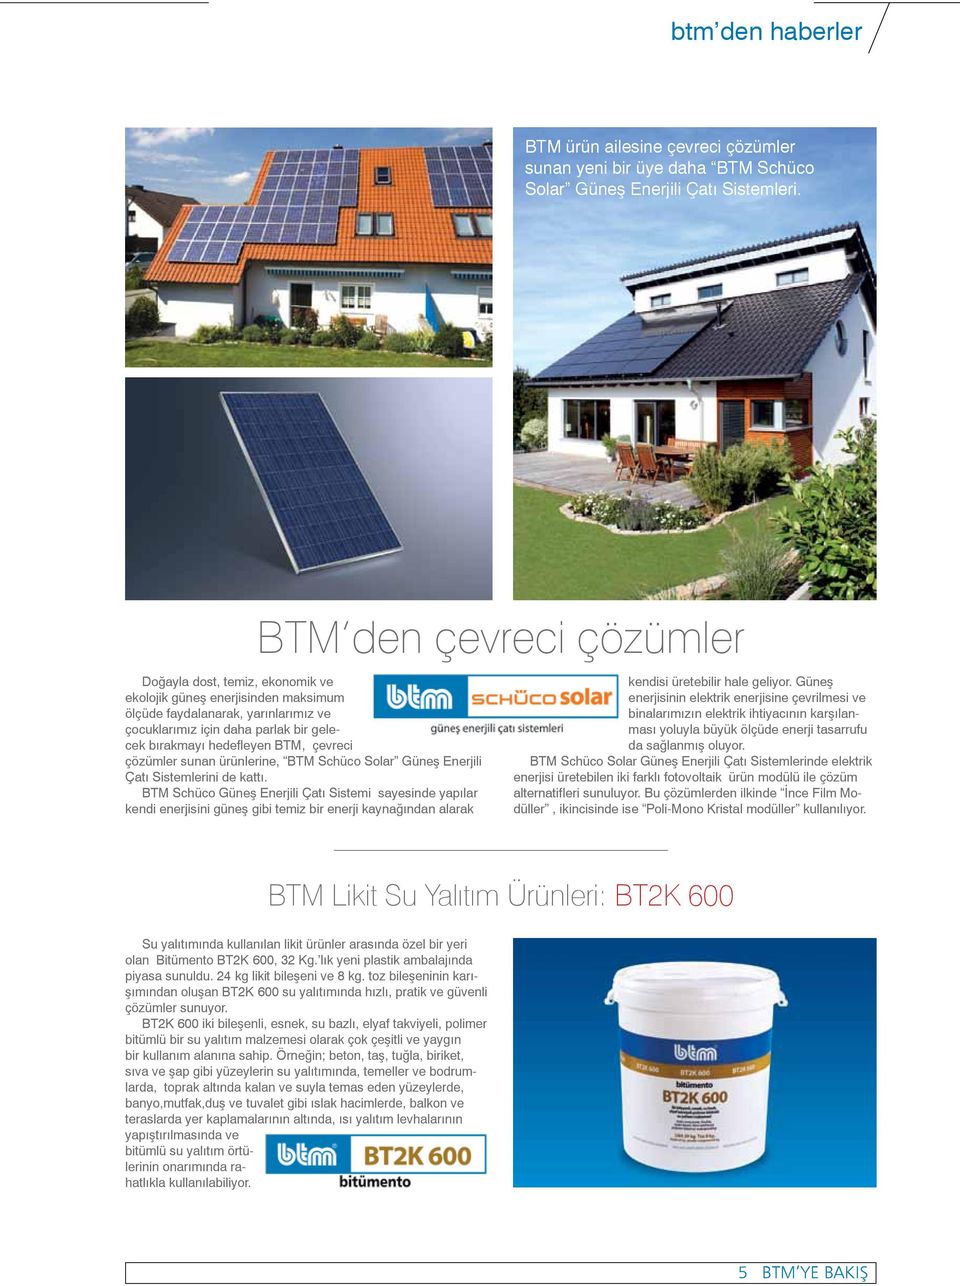 çevreci çözümler sunan ürünlerine, BTM Schüco Solar Güneş Enerjili Çatı Sistemlerini de kattı.